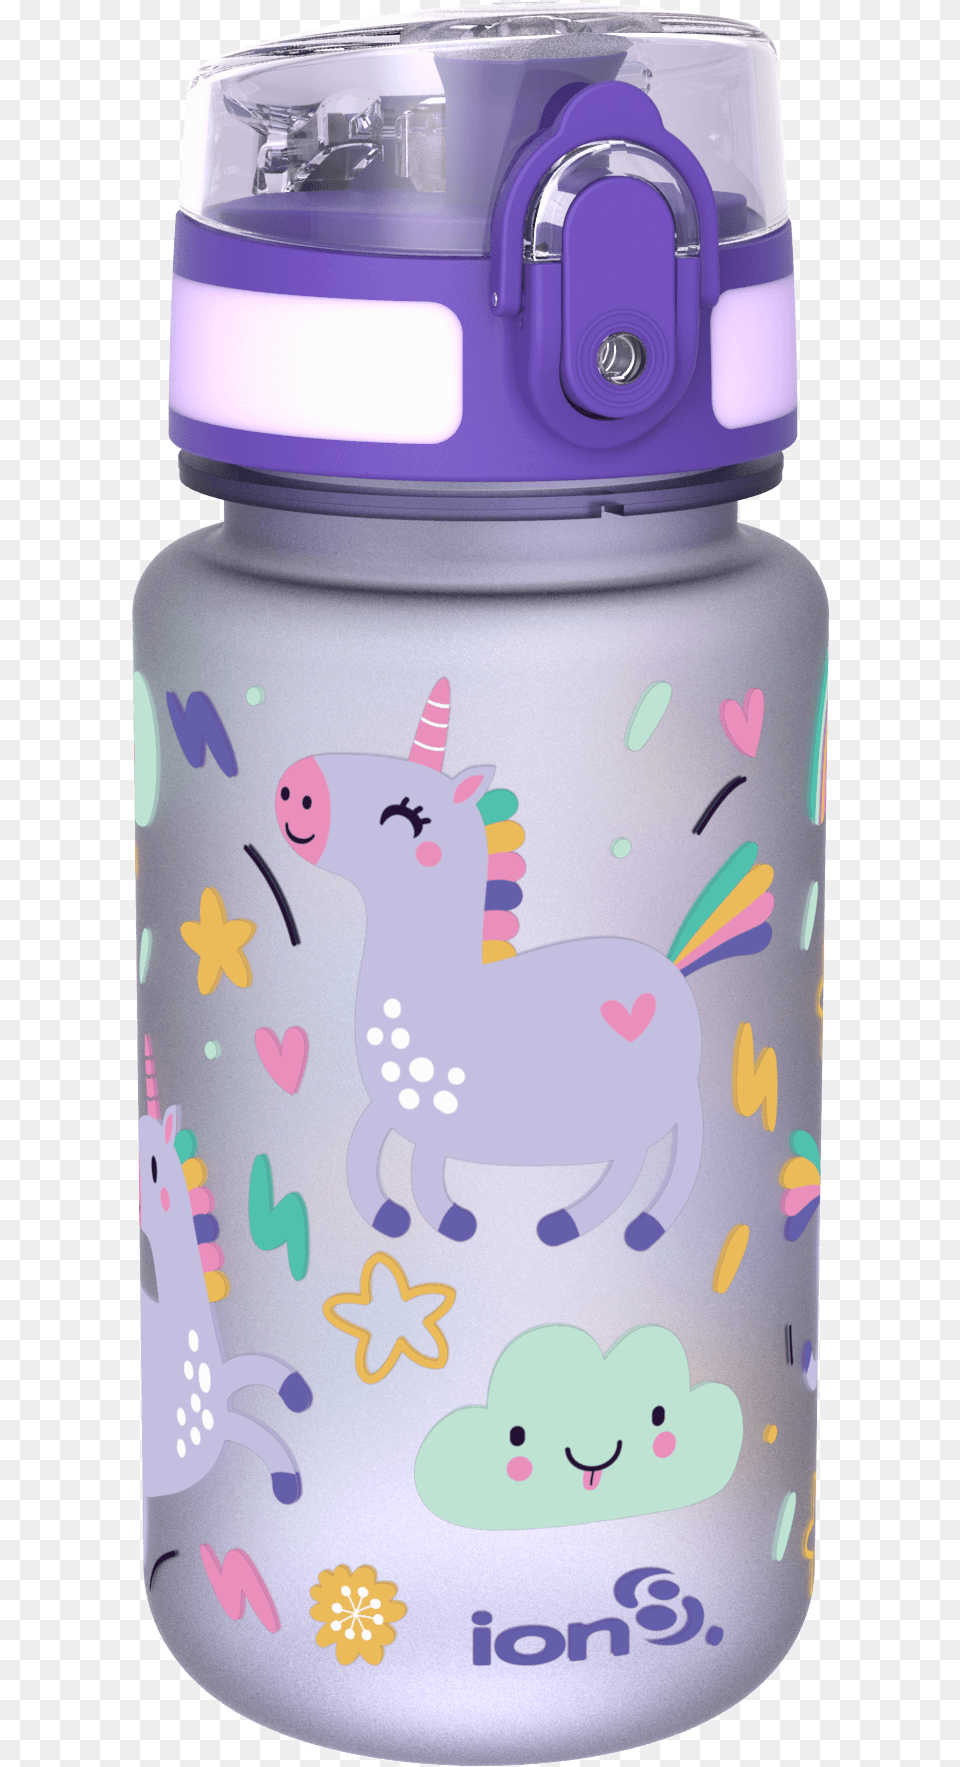 Water Bottle, Jar, Water Bottle, Shaker Png Image